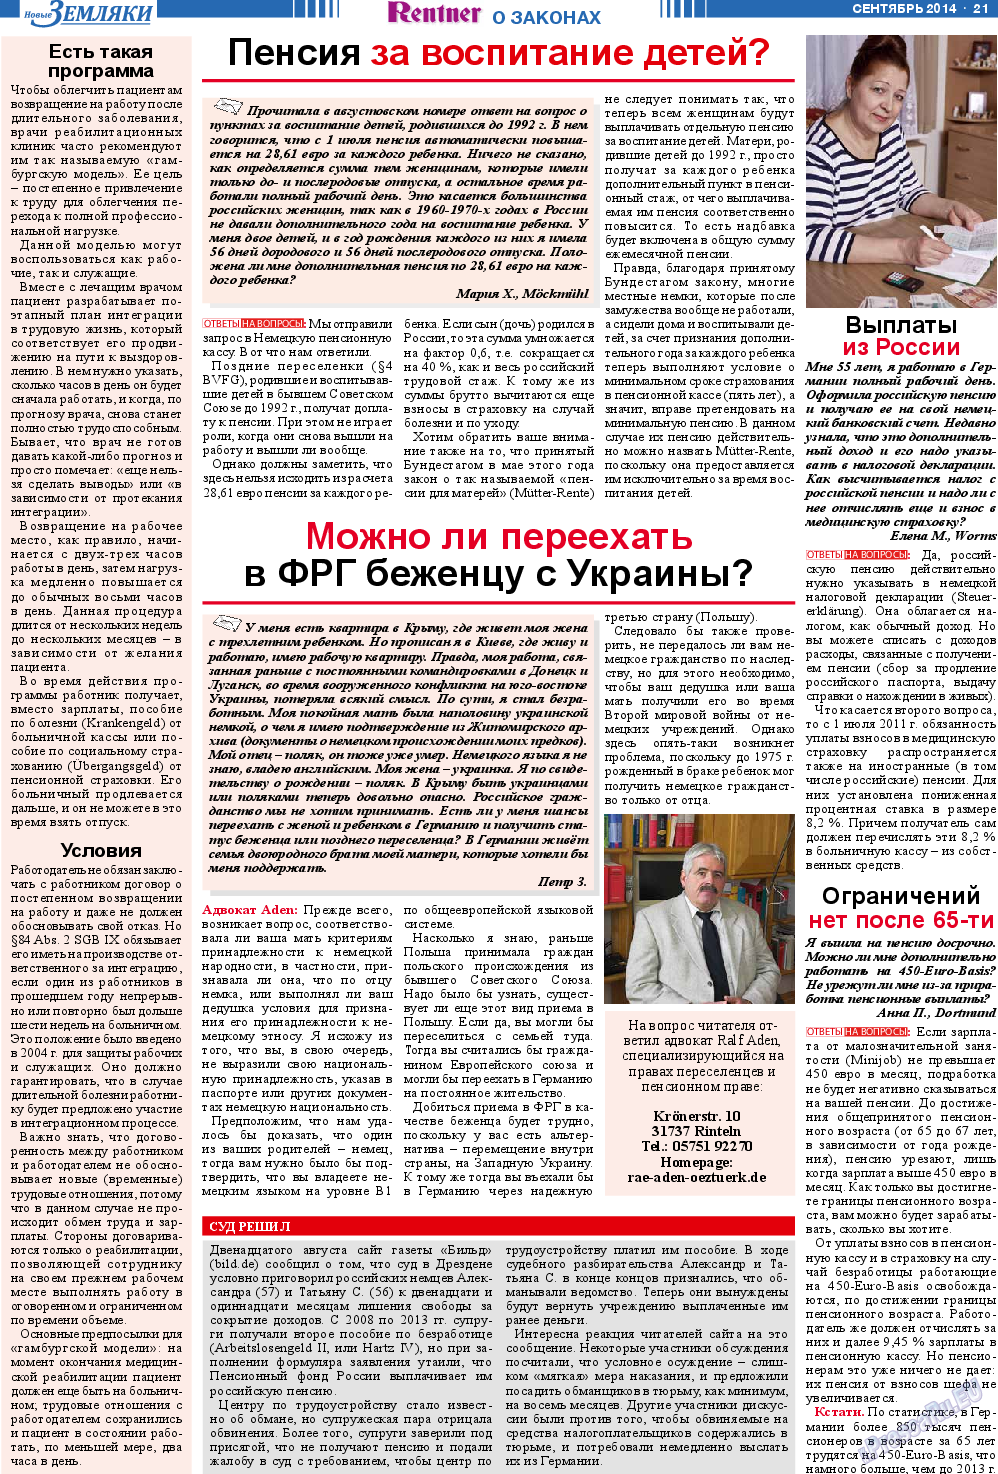 Новые Земляки, газета. 2014 №9 стр.21